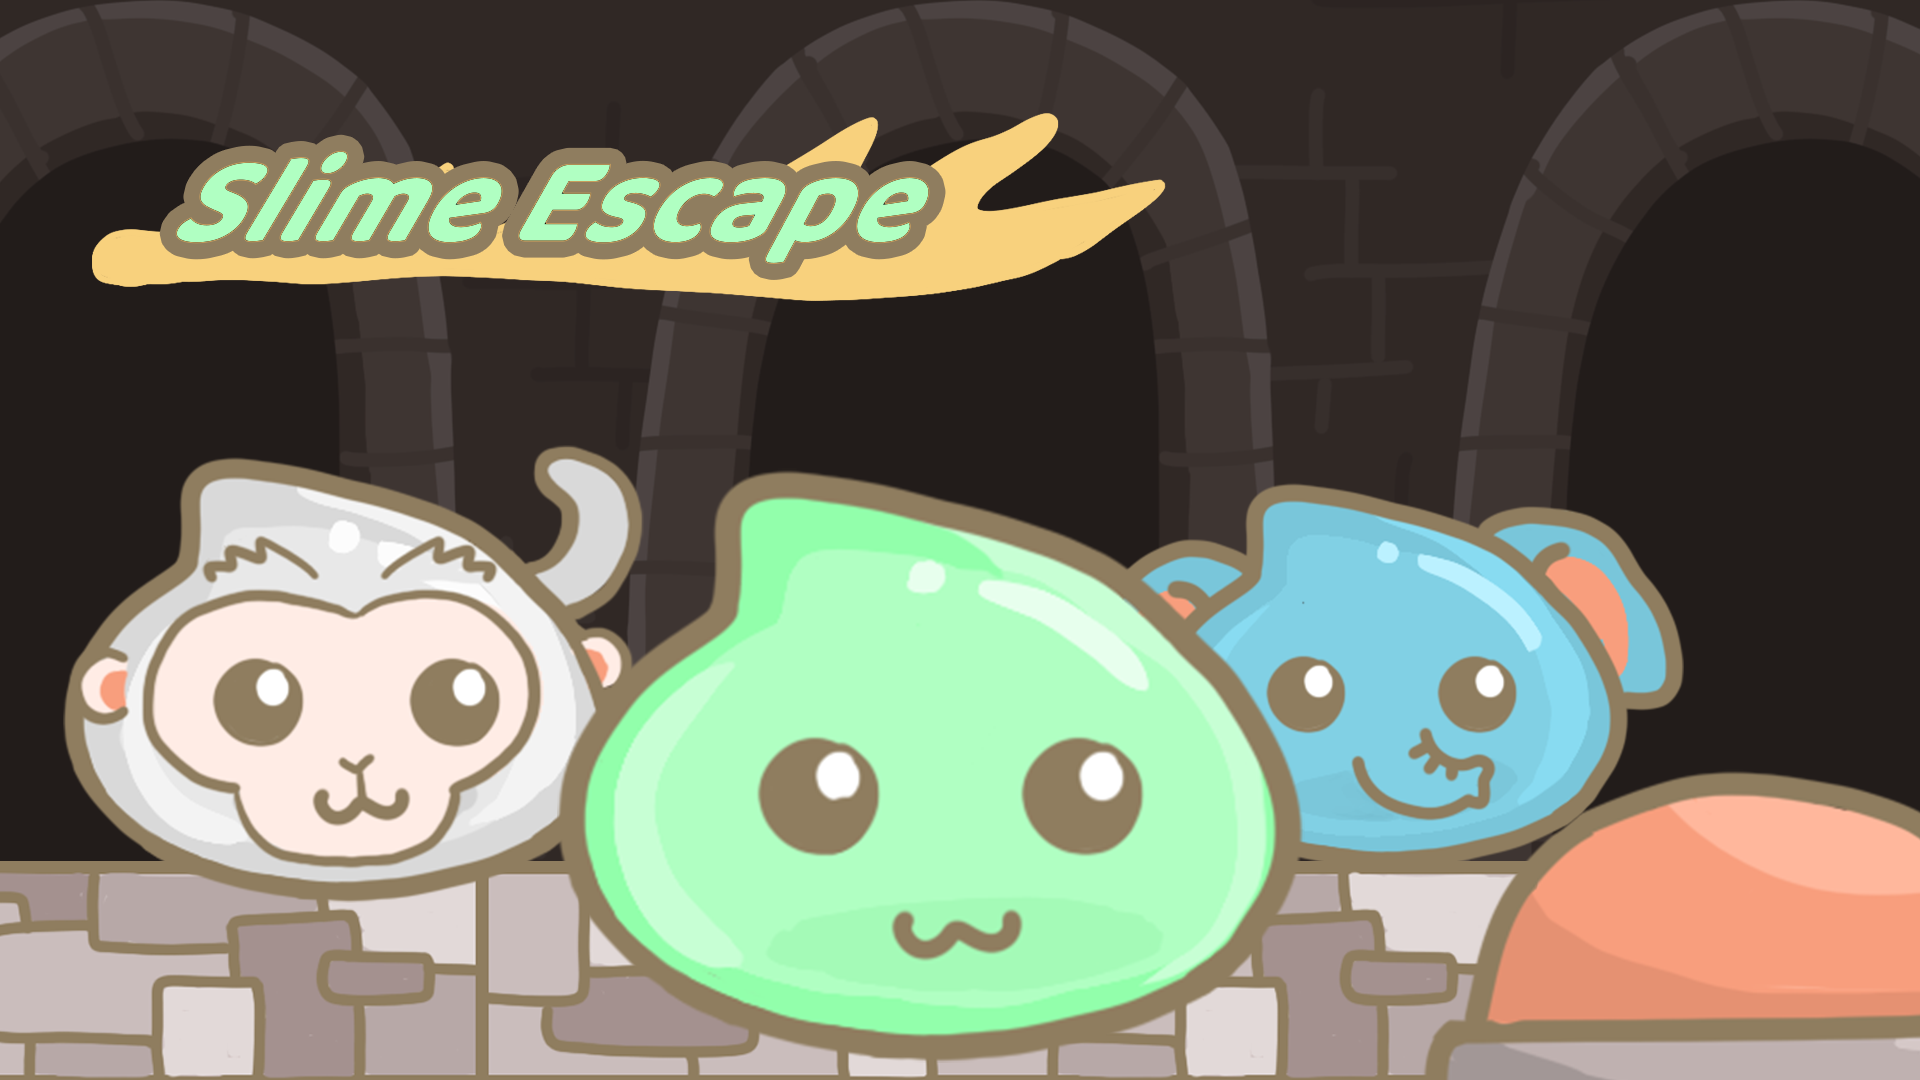 Slime Escape